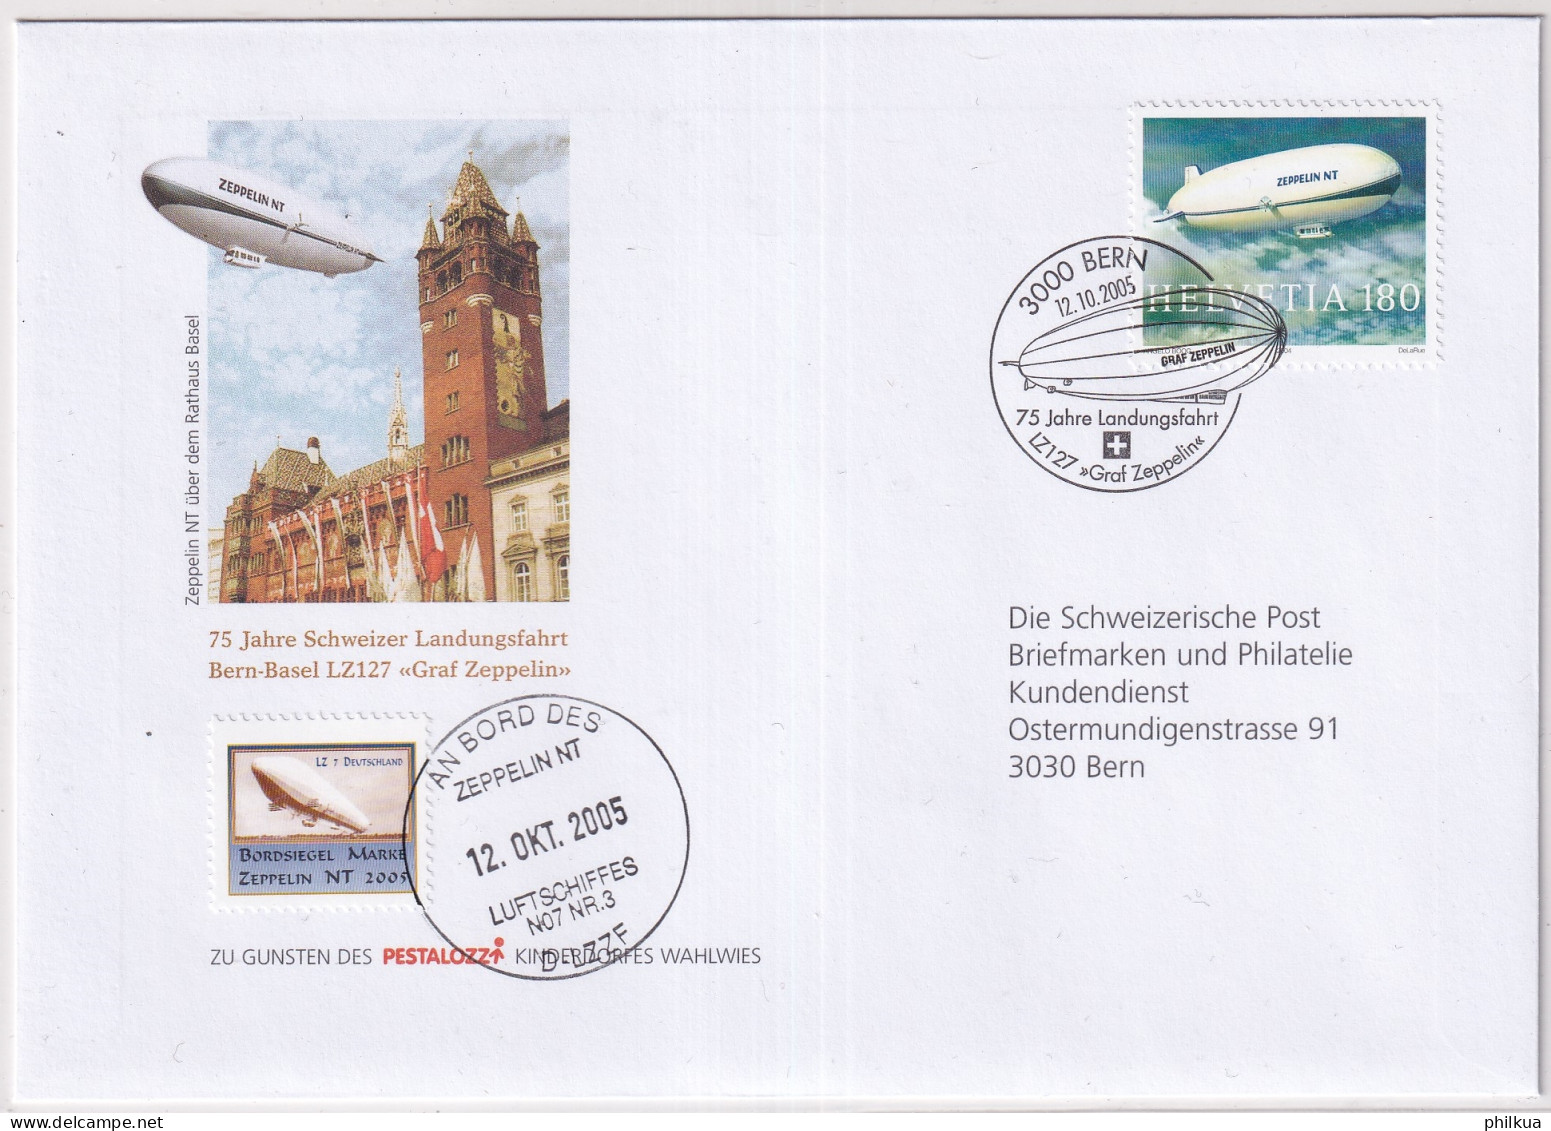 1121 / Michel 1879 Auf Illustriertem  Brief Mit Sonderstempel An Bprd Des Zeppelin NT Mit Vignette - Briefe U. Dokumente